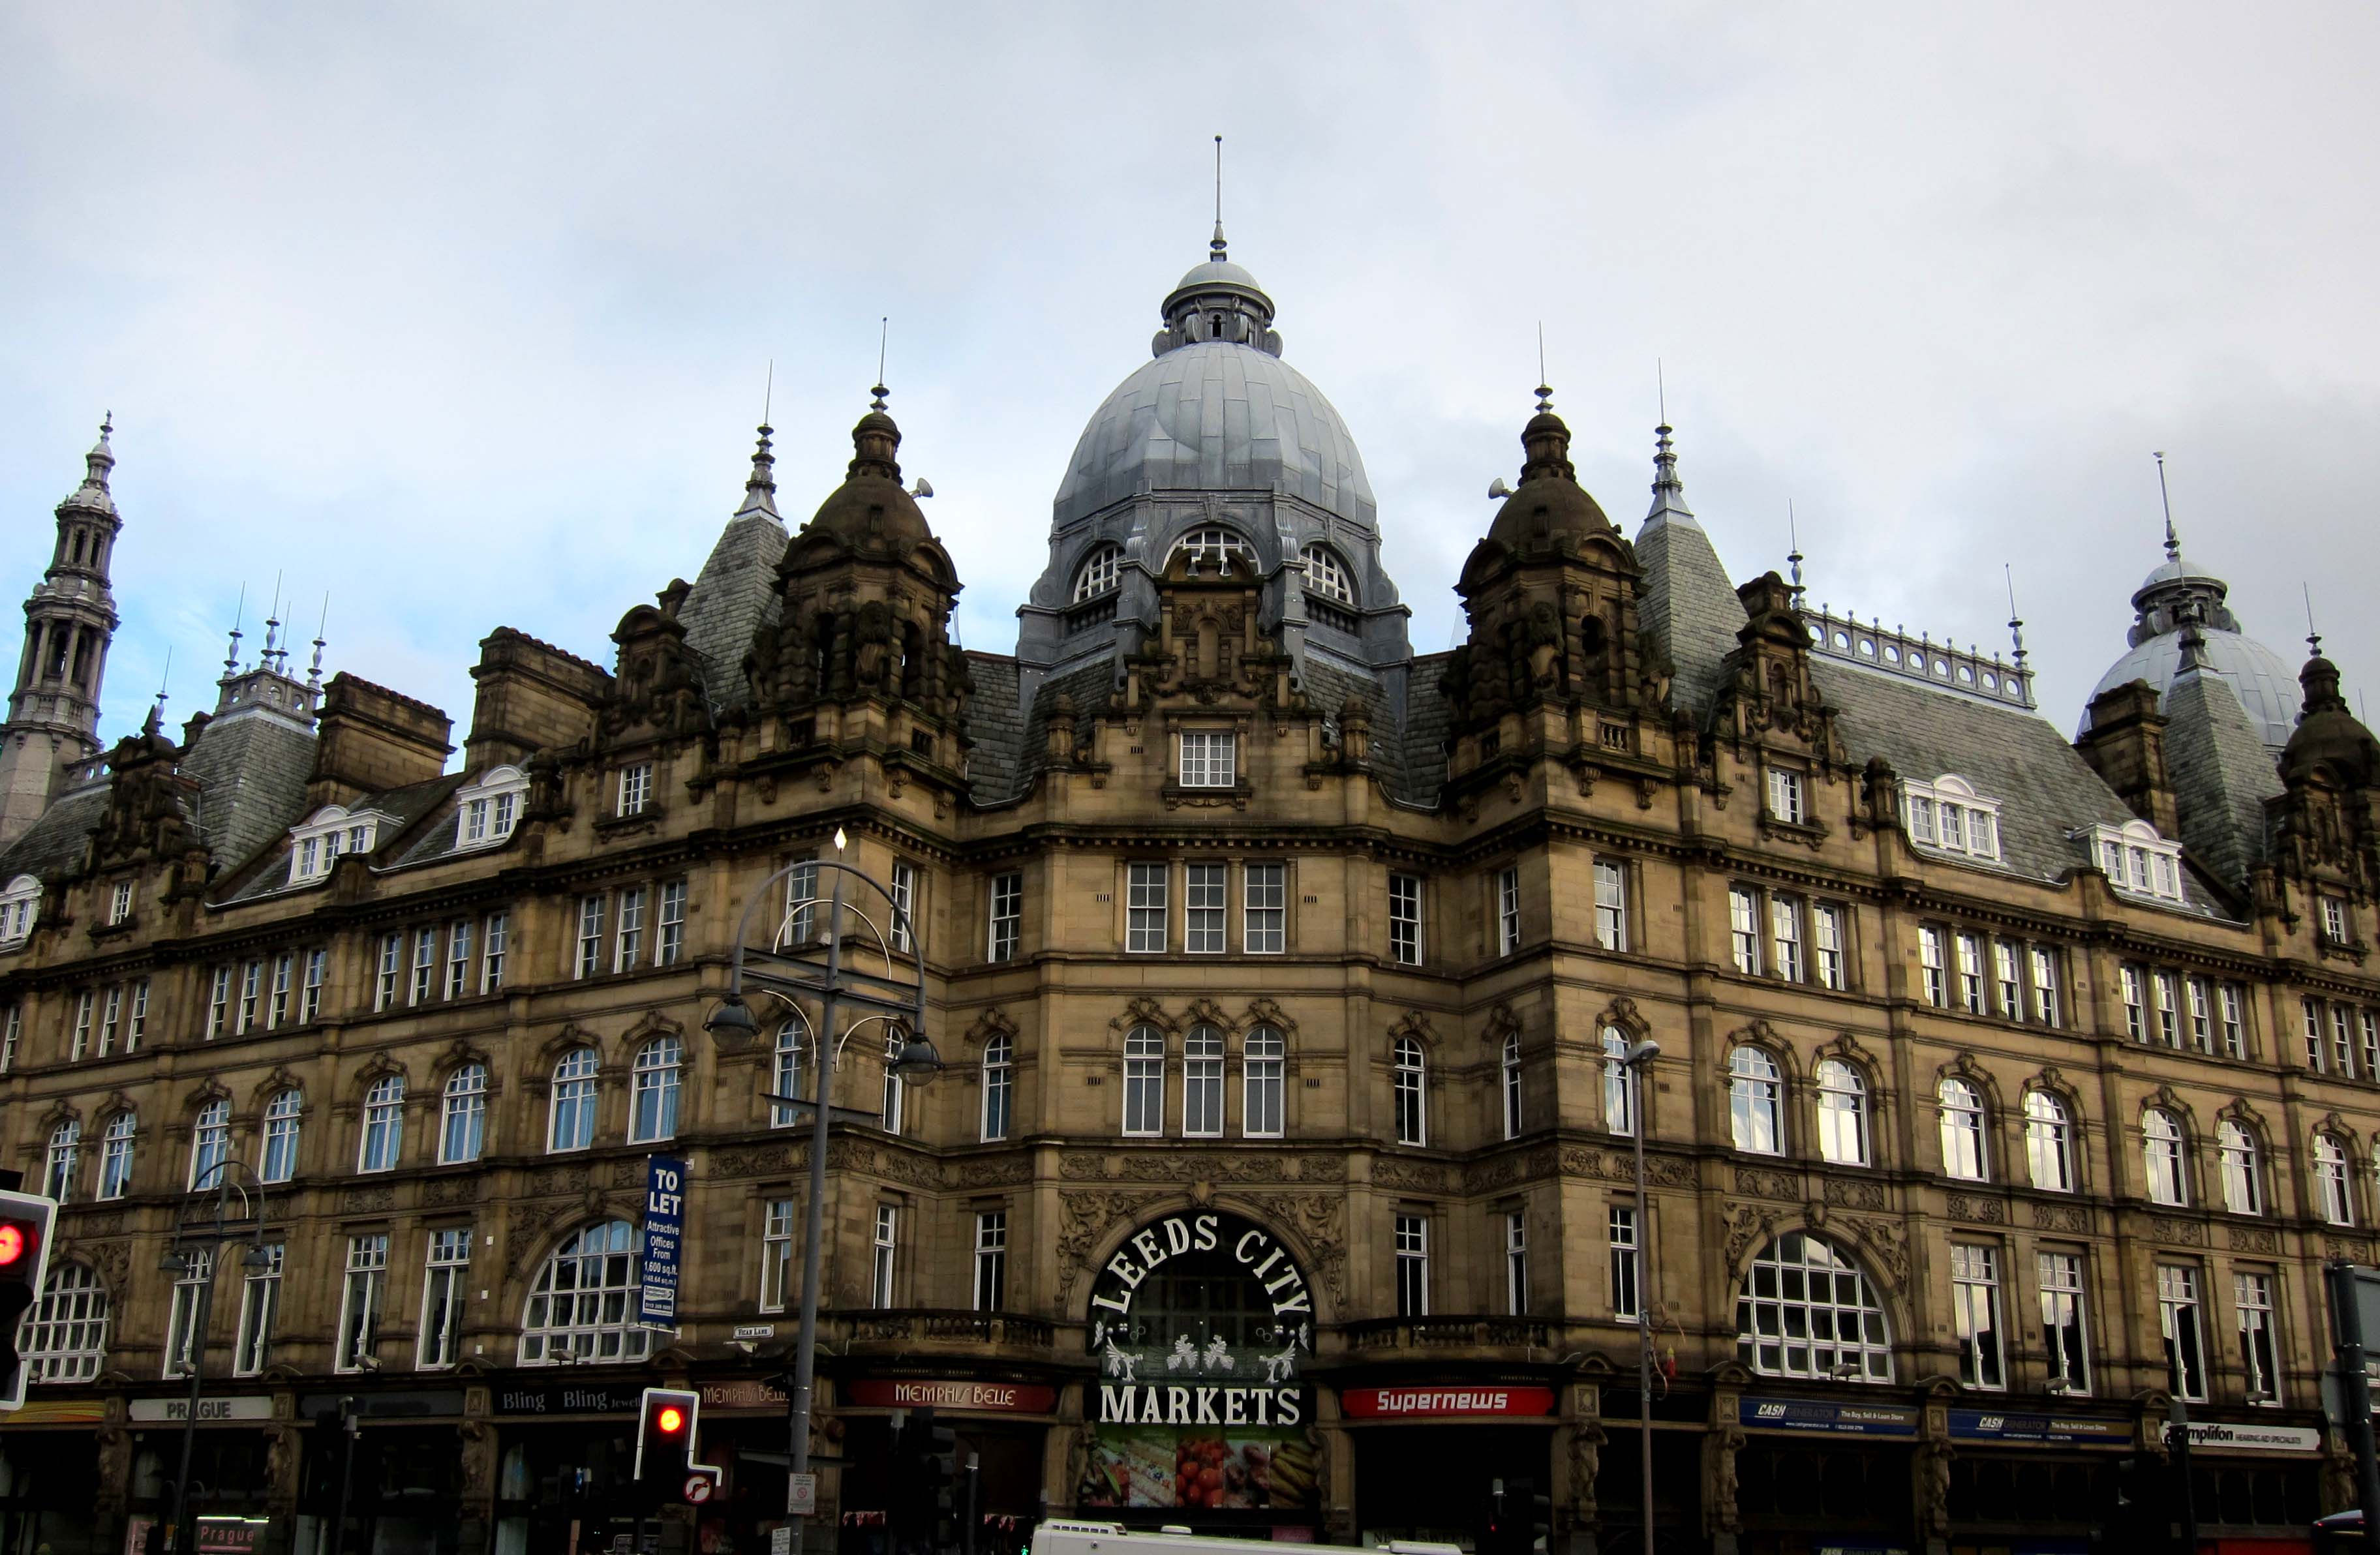 Leeds Market Building